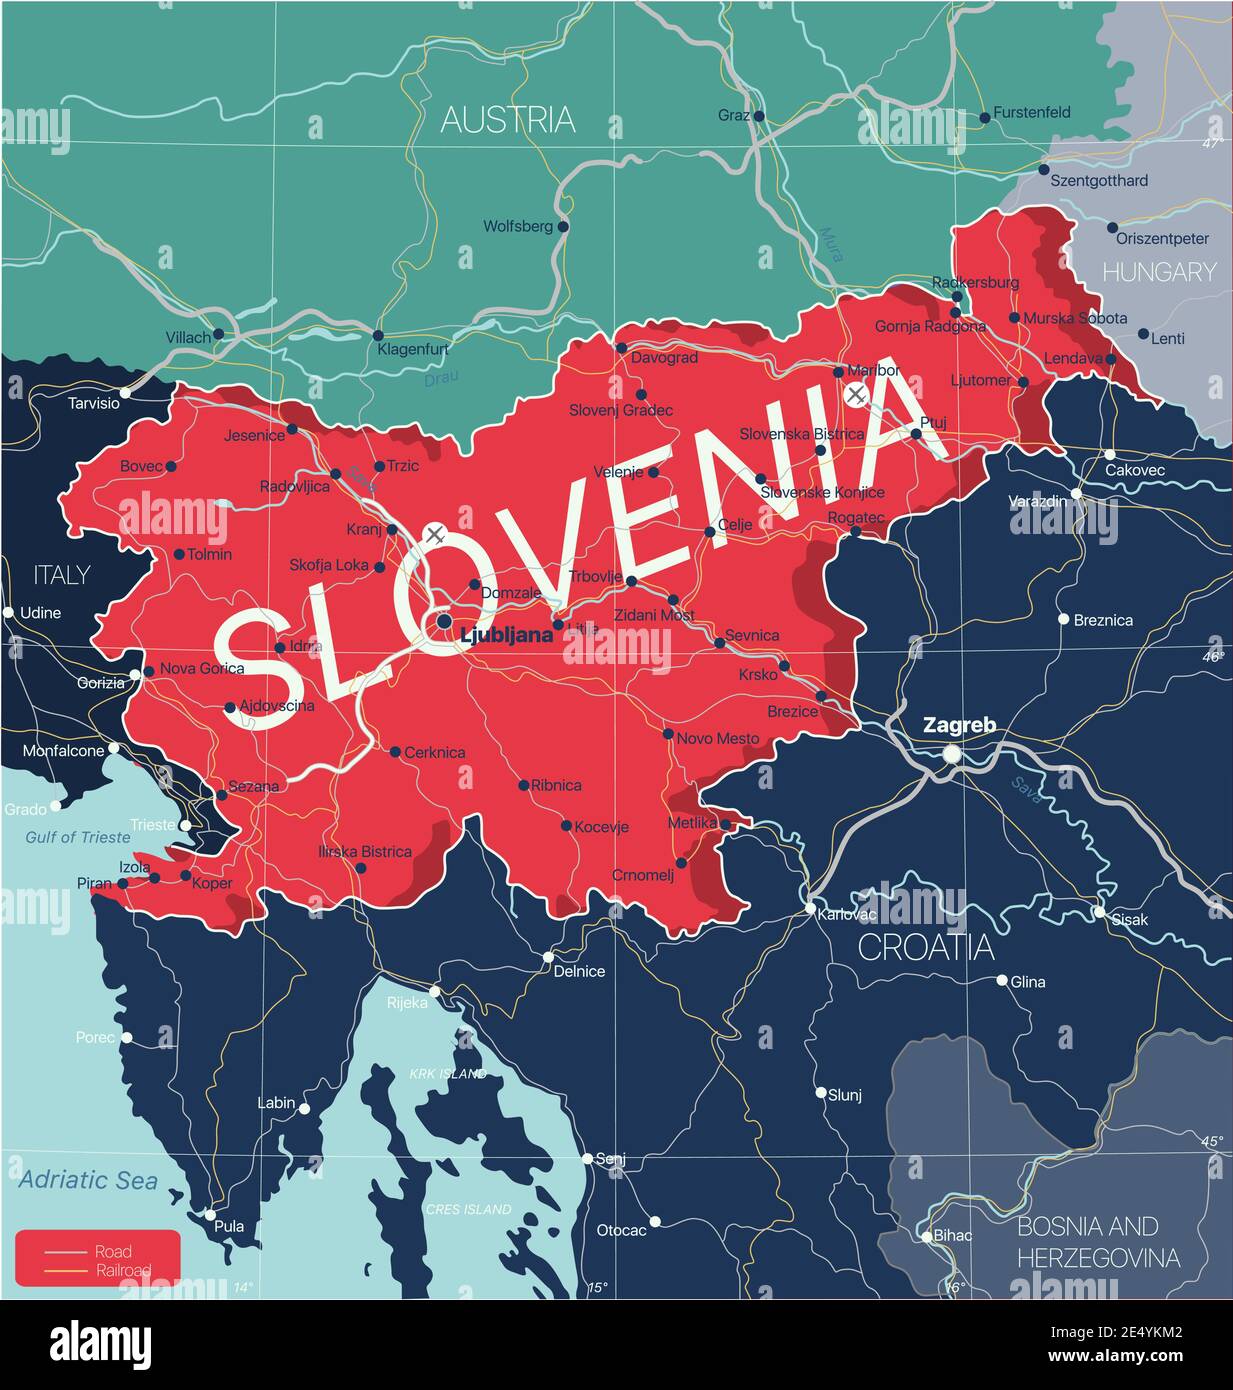 Slowenien Land detaillierte editierbare Karte mit Regionen Städte und Städte, Straßen und Eisenbahnen, geografische Standorte. Vector EPS-10-Datei Stock Vektor